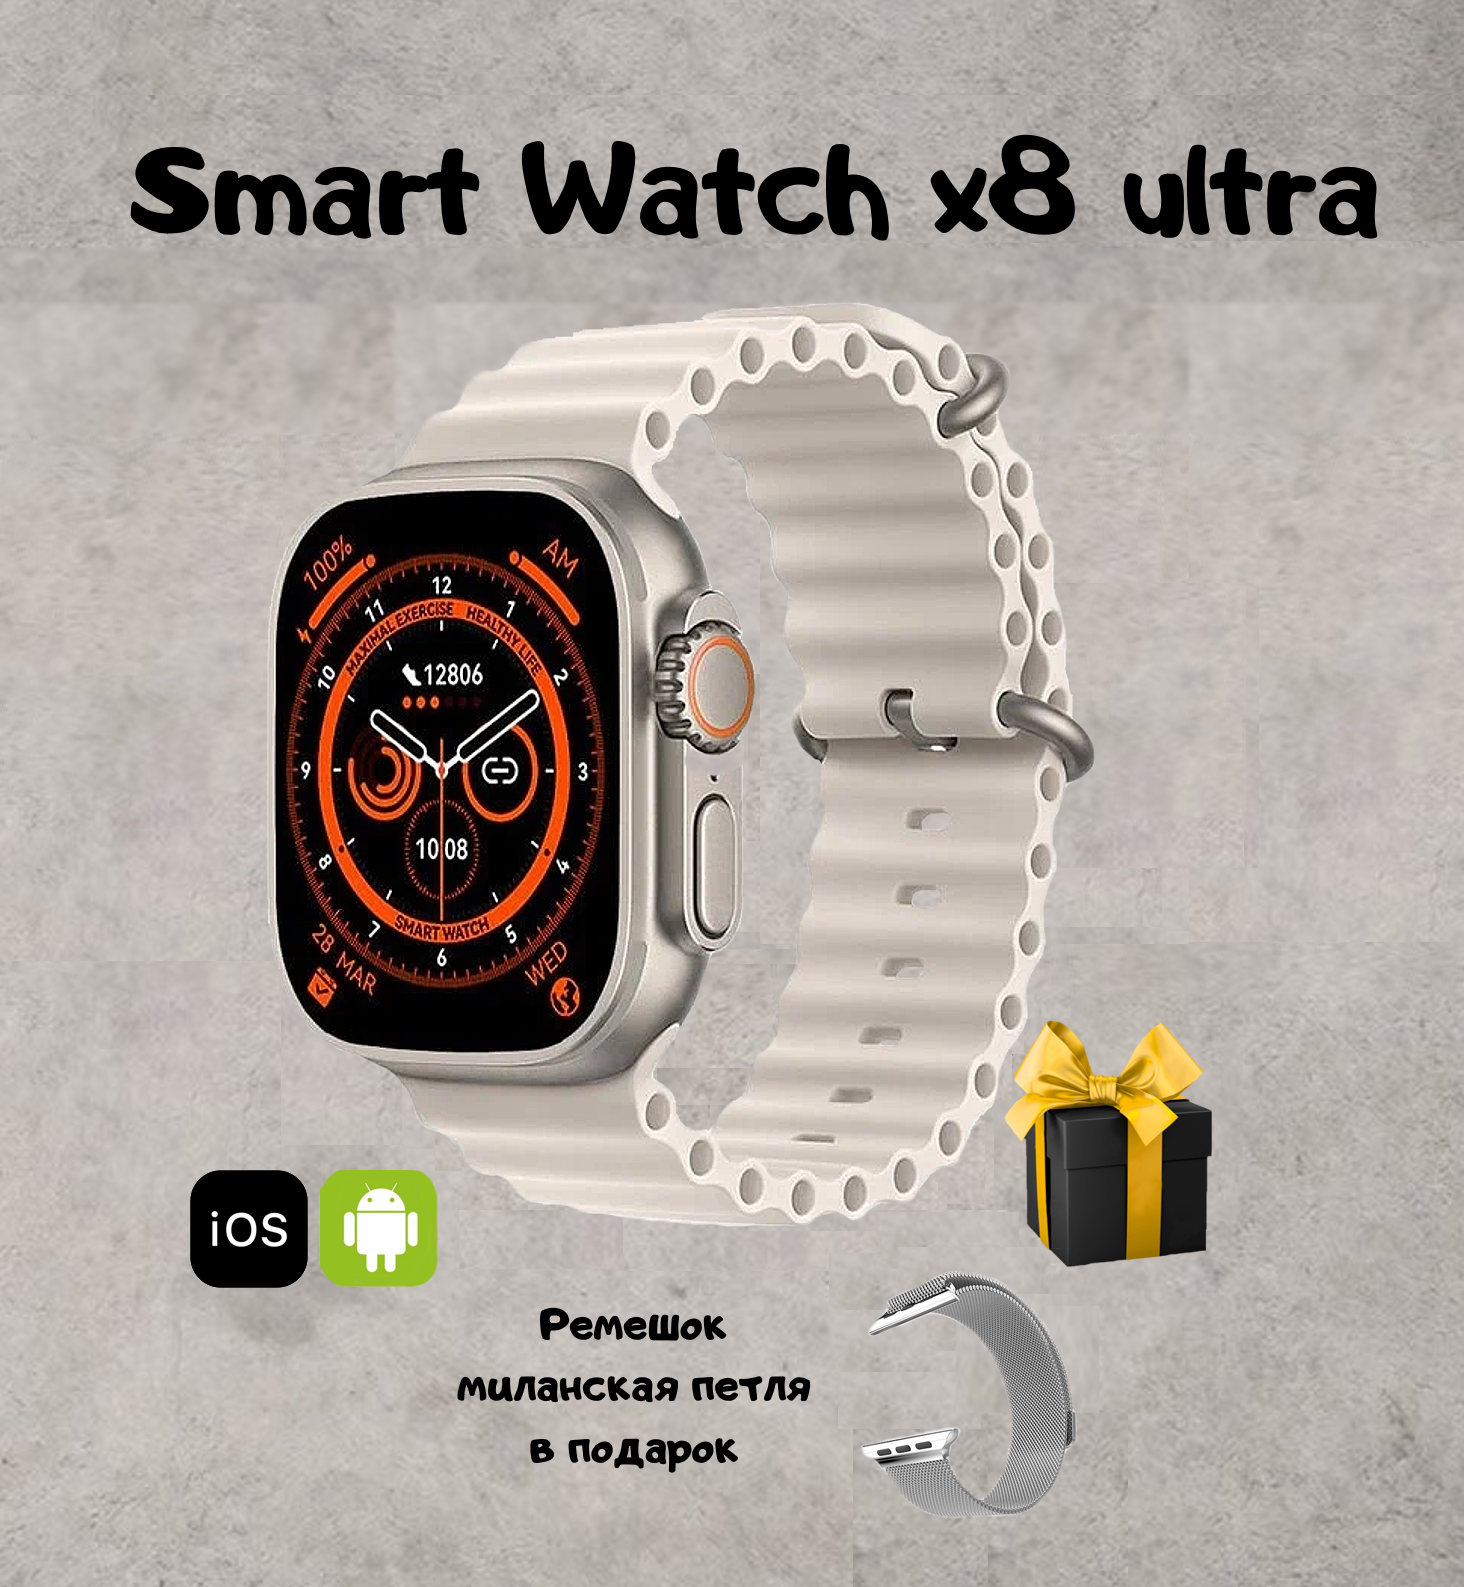 Умные смарт часы Smаrt Watch X8 ultra серебряные